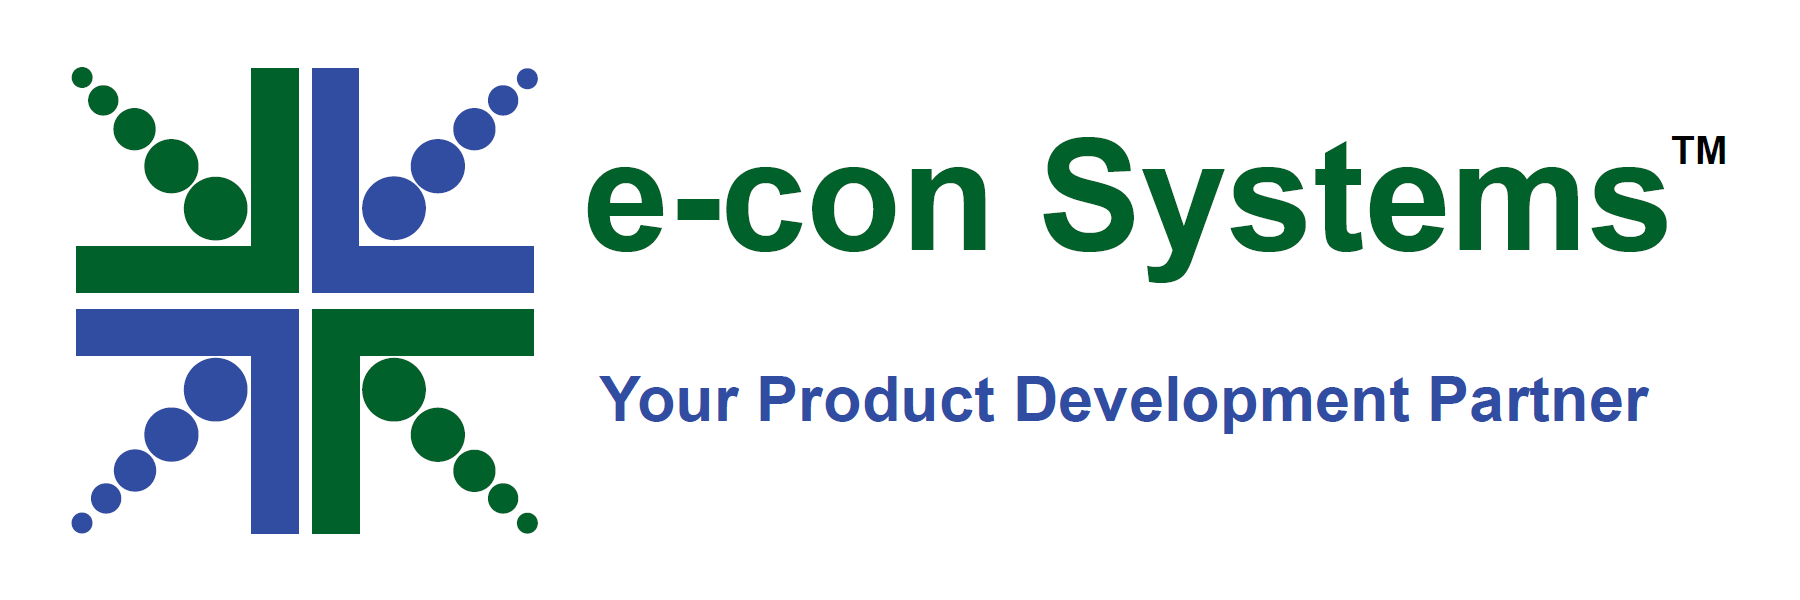 E-con Systems Partner